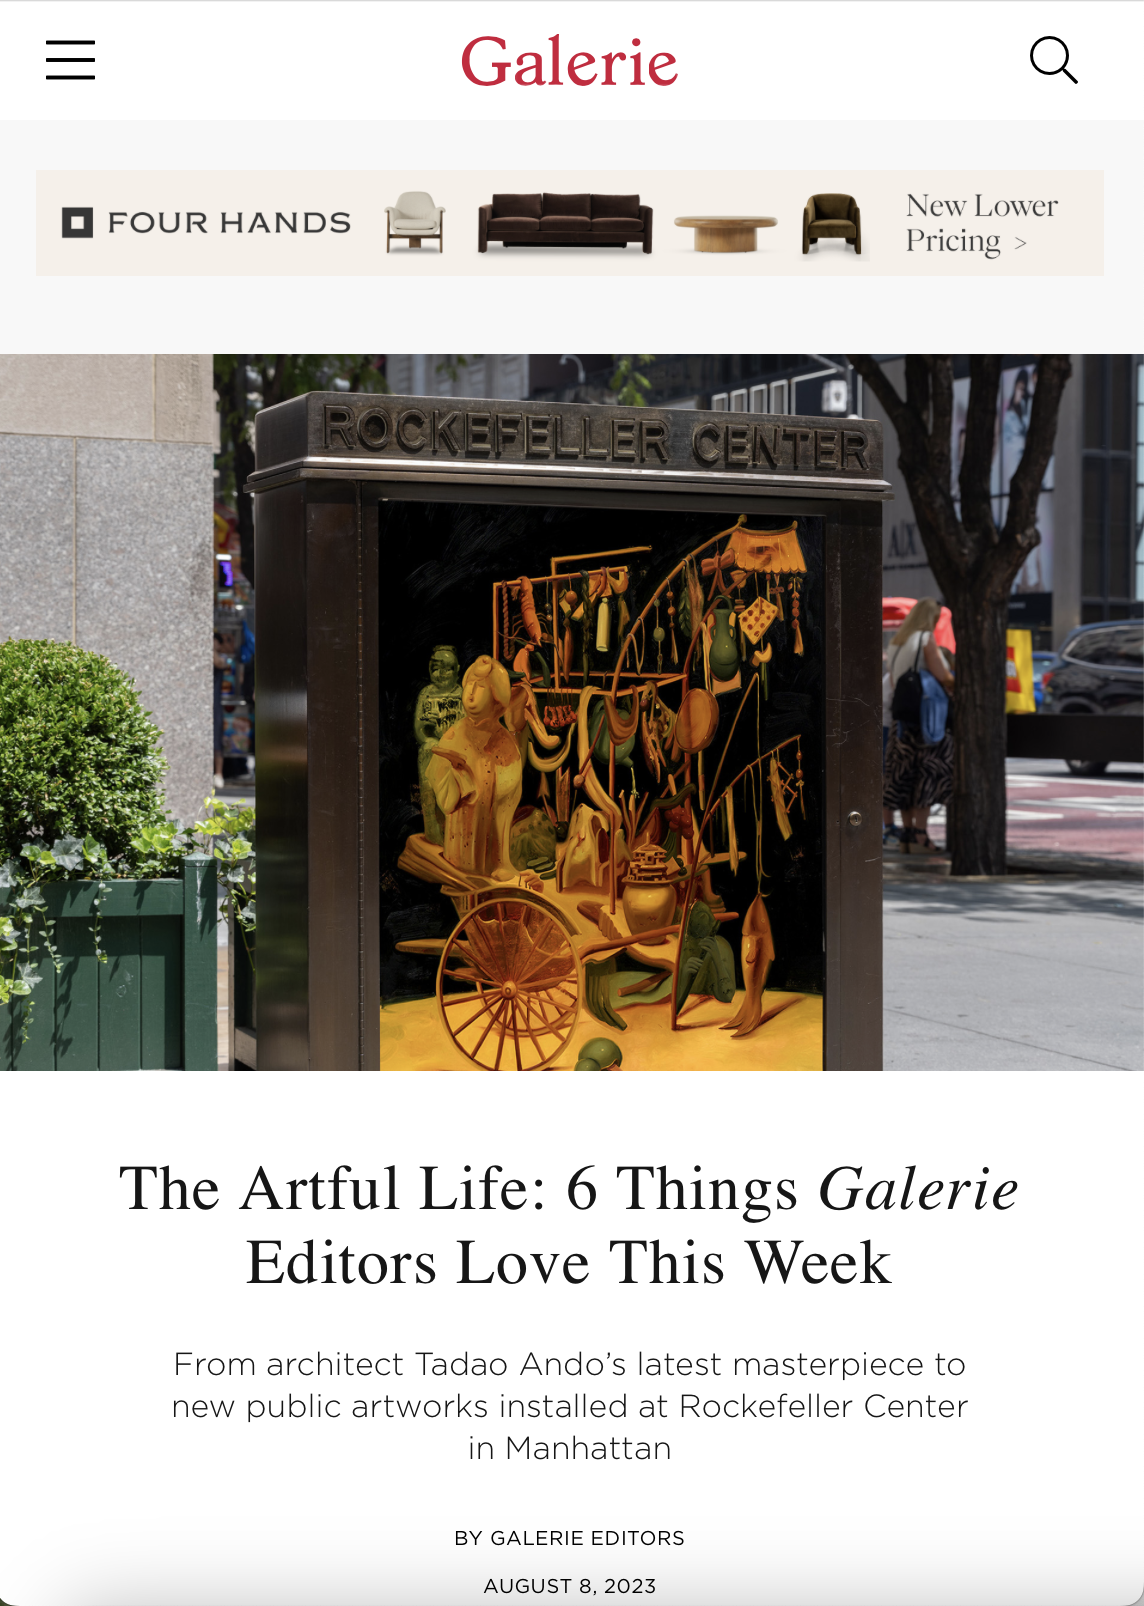 The Artful Life: 6 Things Galerie Editors Love This Week - Galerie